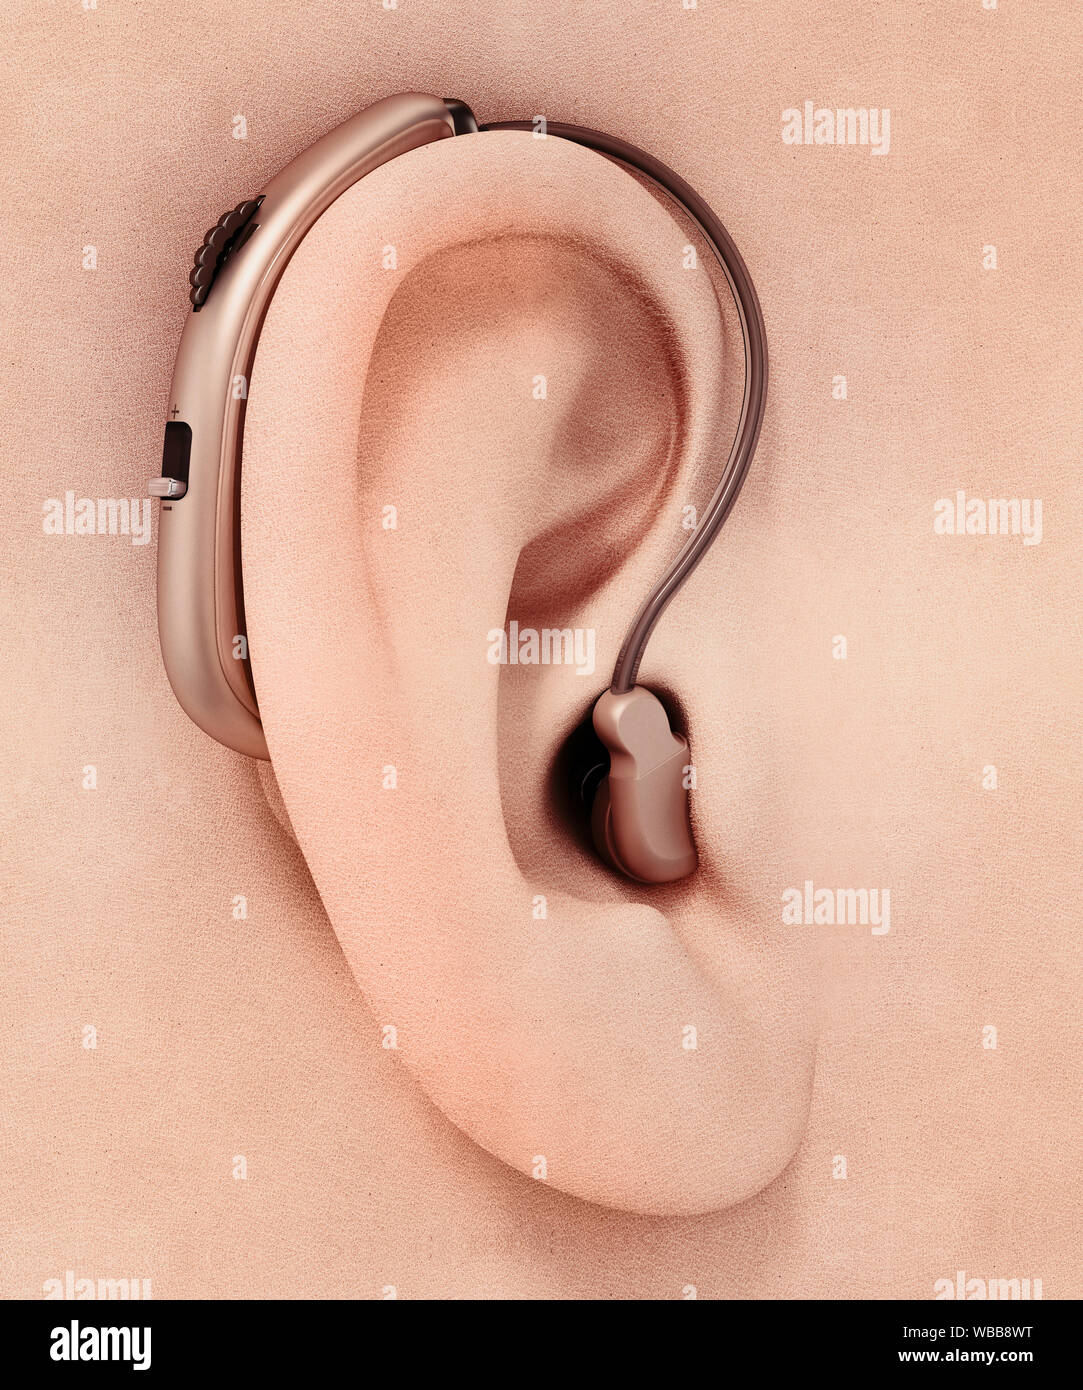 L'aide auditive générique autour de l'oreille. 3D illustration. Banque D'Images